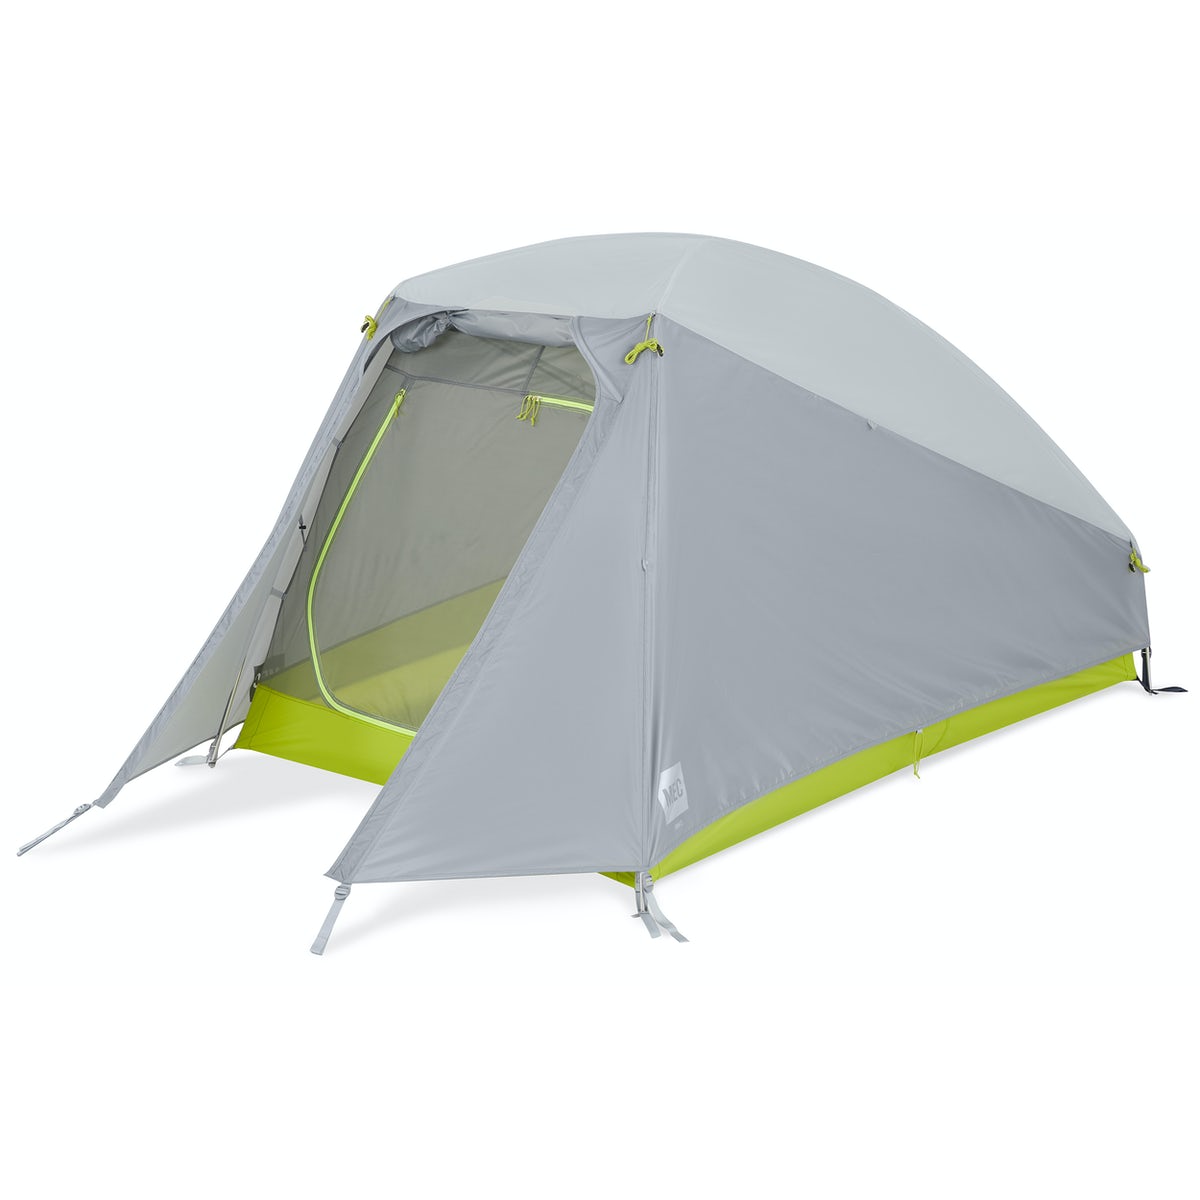 Neo 2 tent